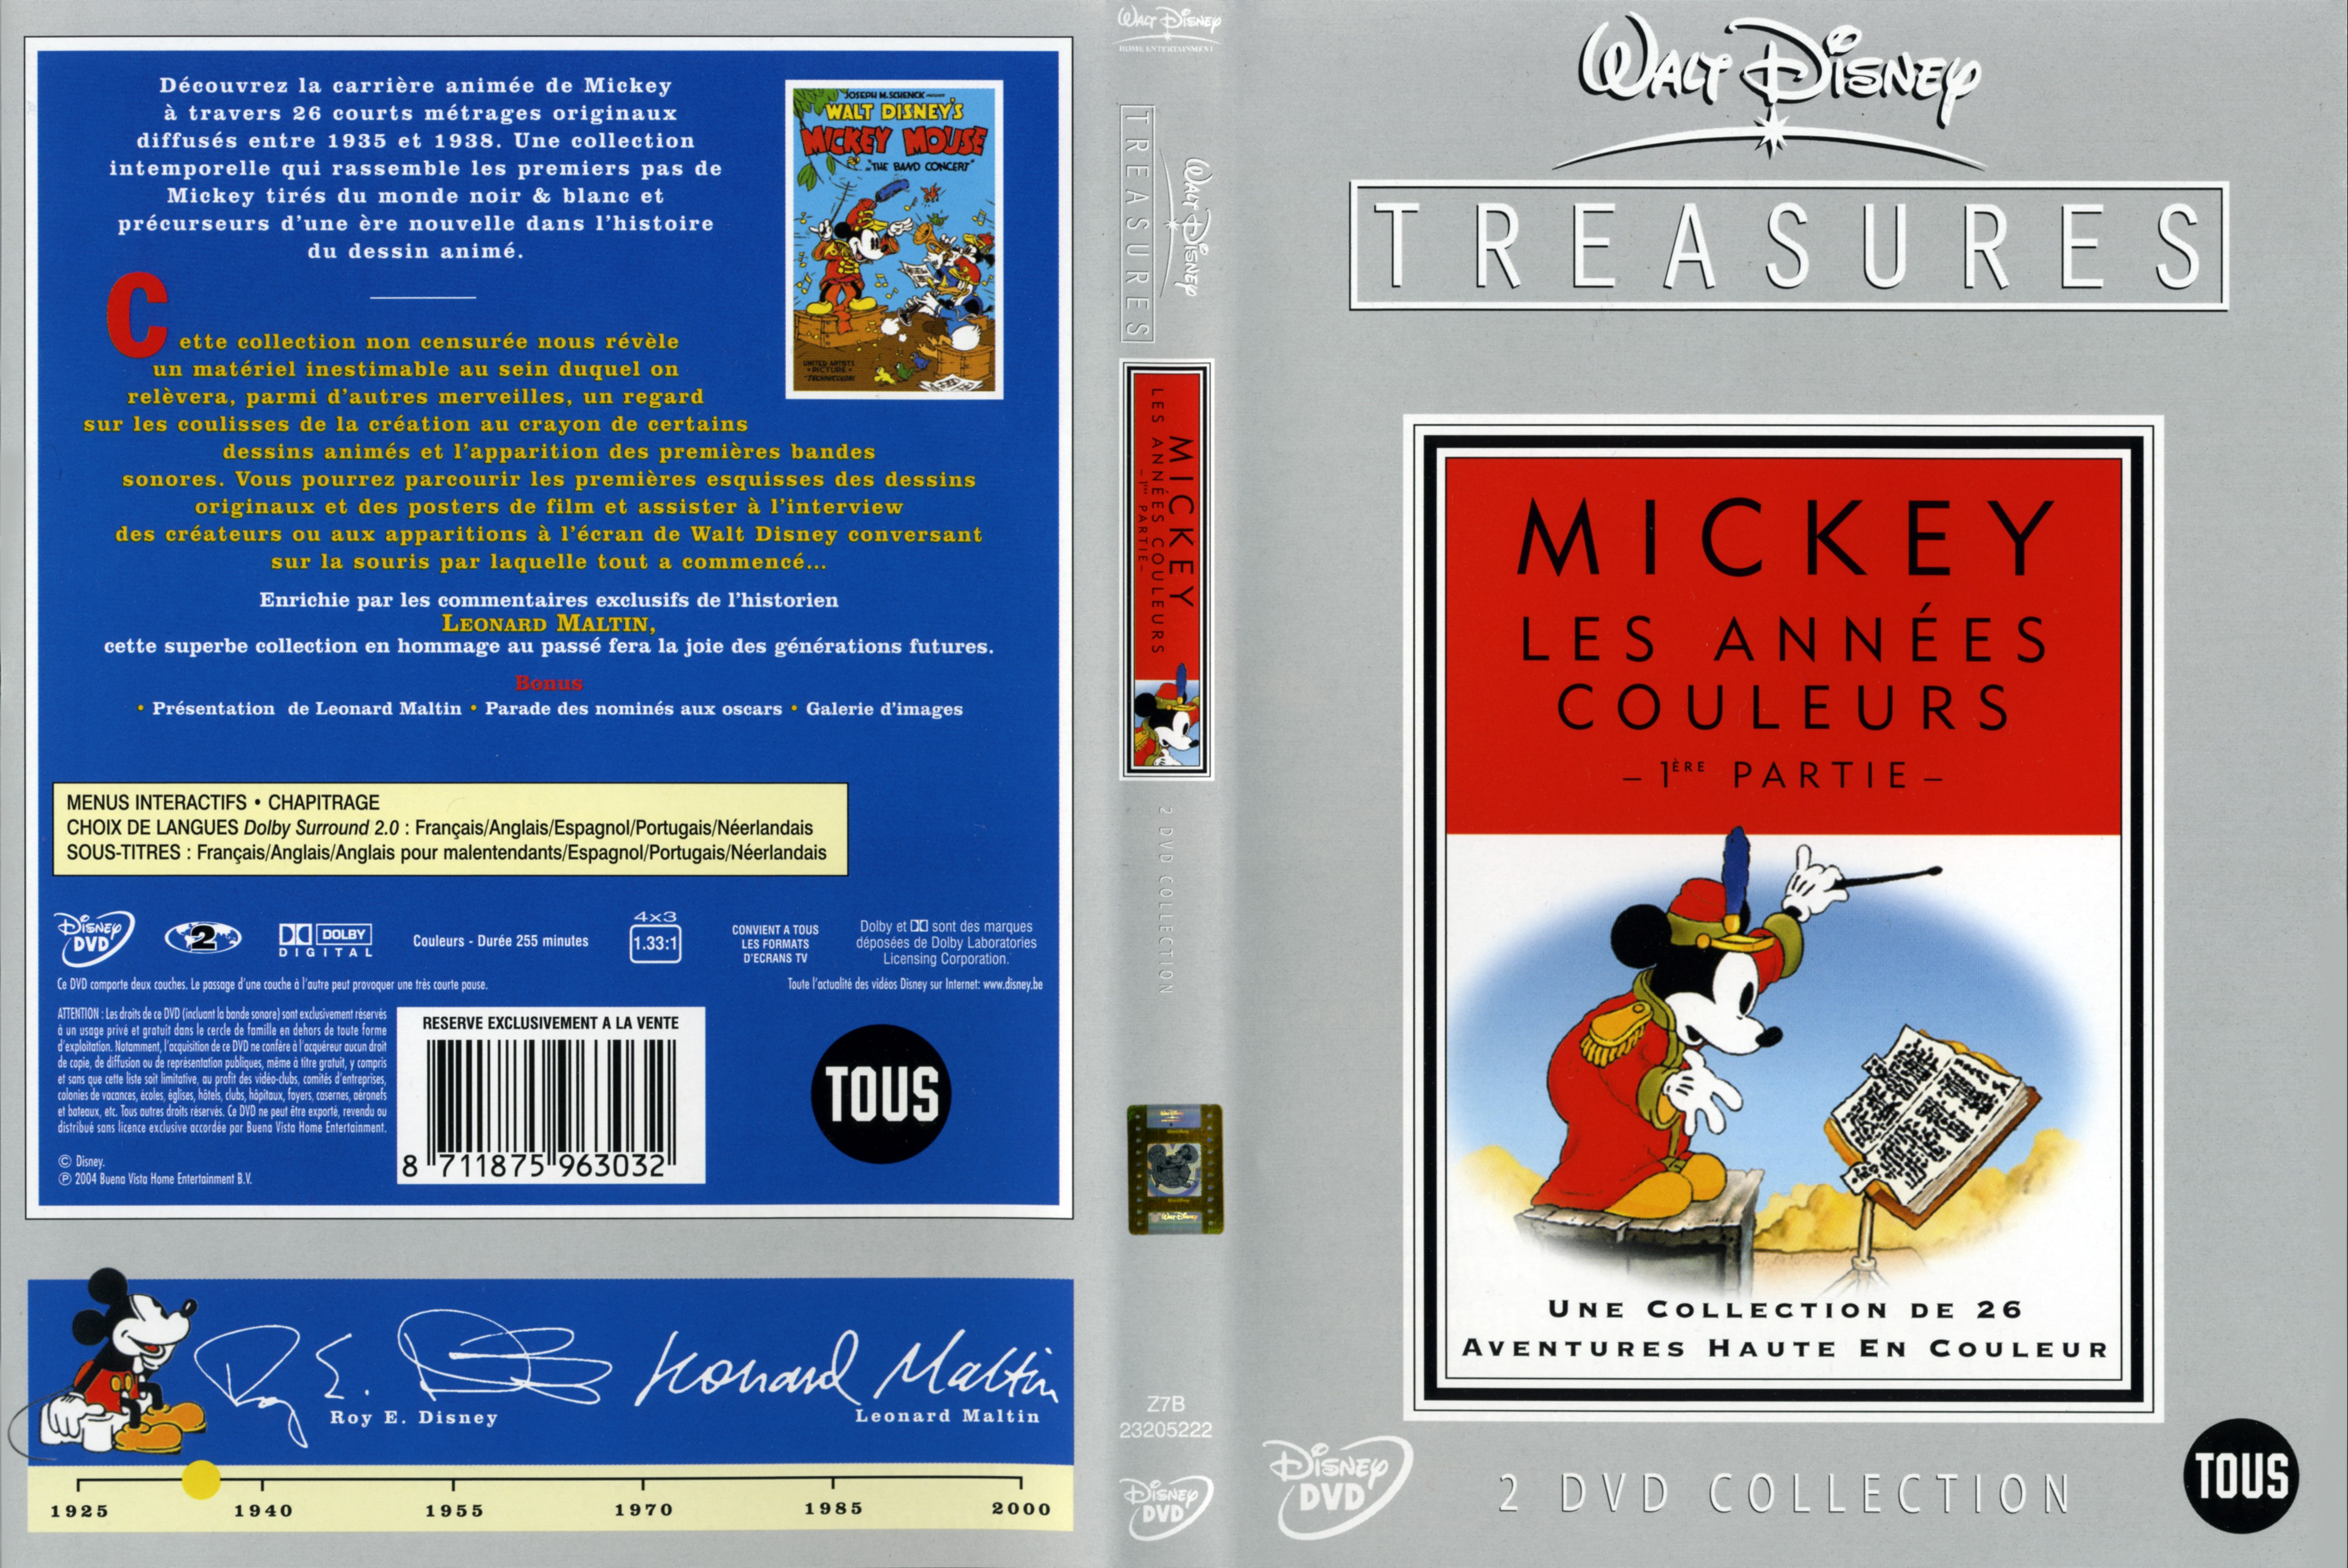 Jaquette DVD Mickey les annees couleurs 1 ere partie